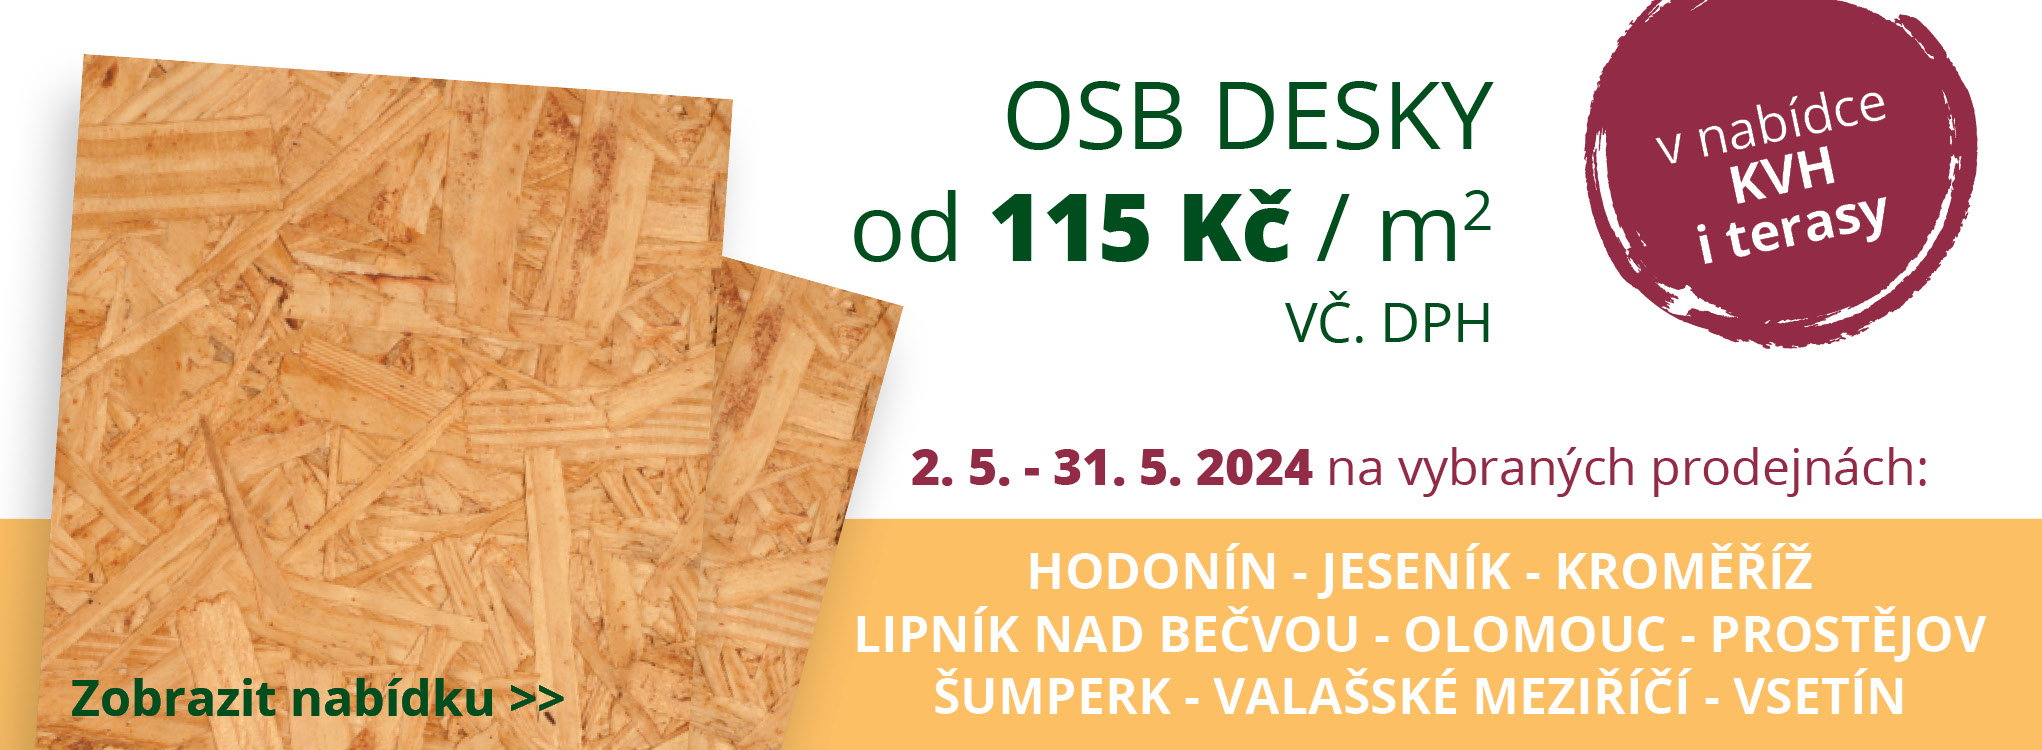 Akce OSB Olomoucko 05/2024